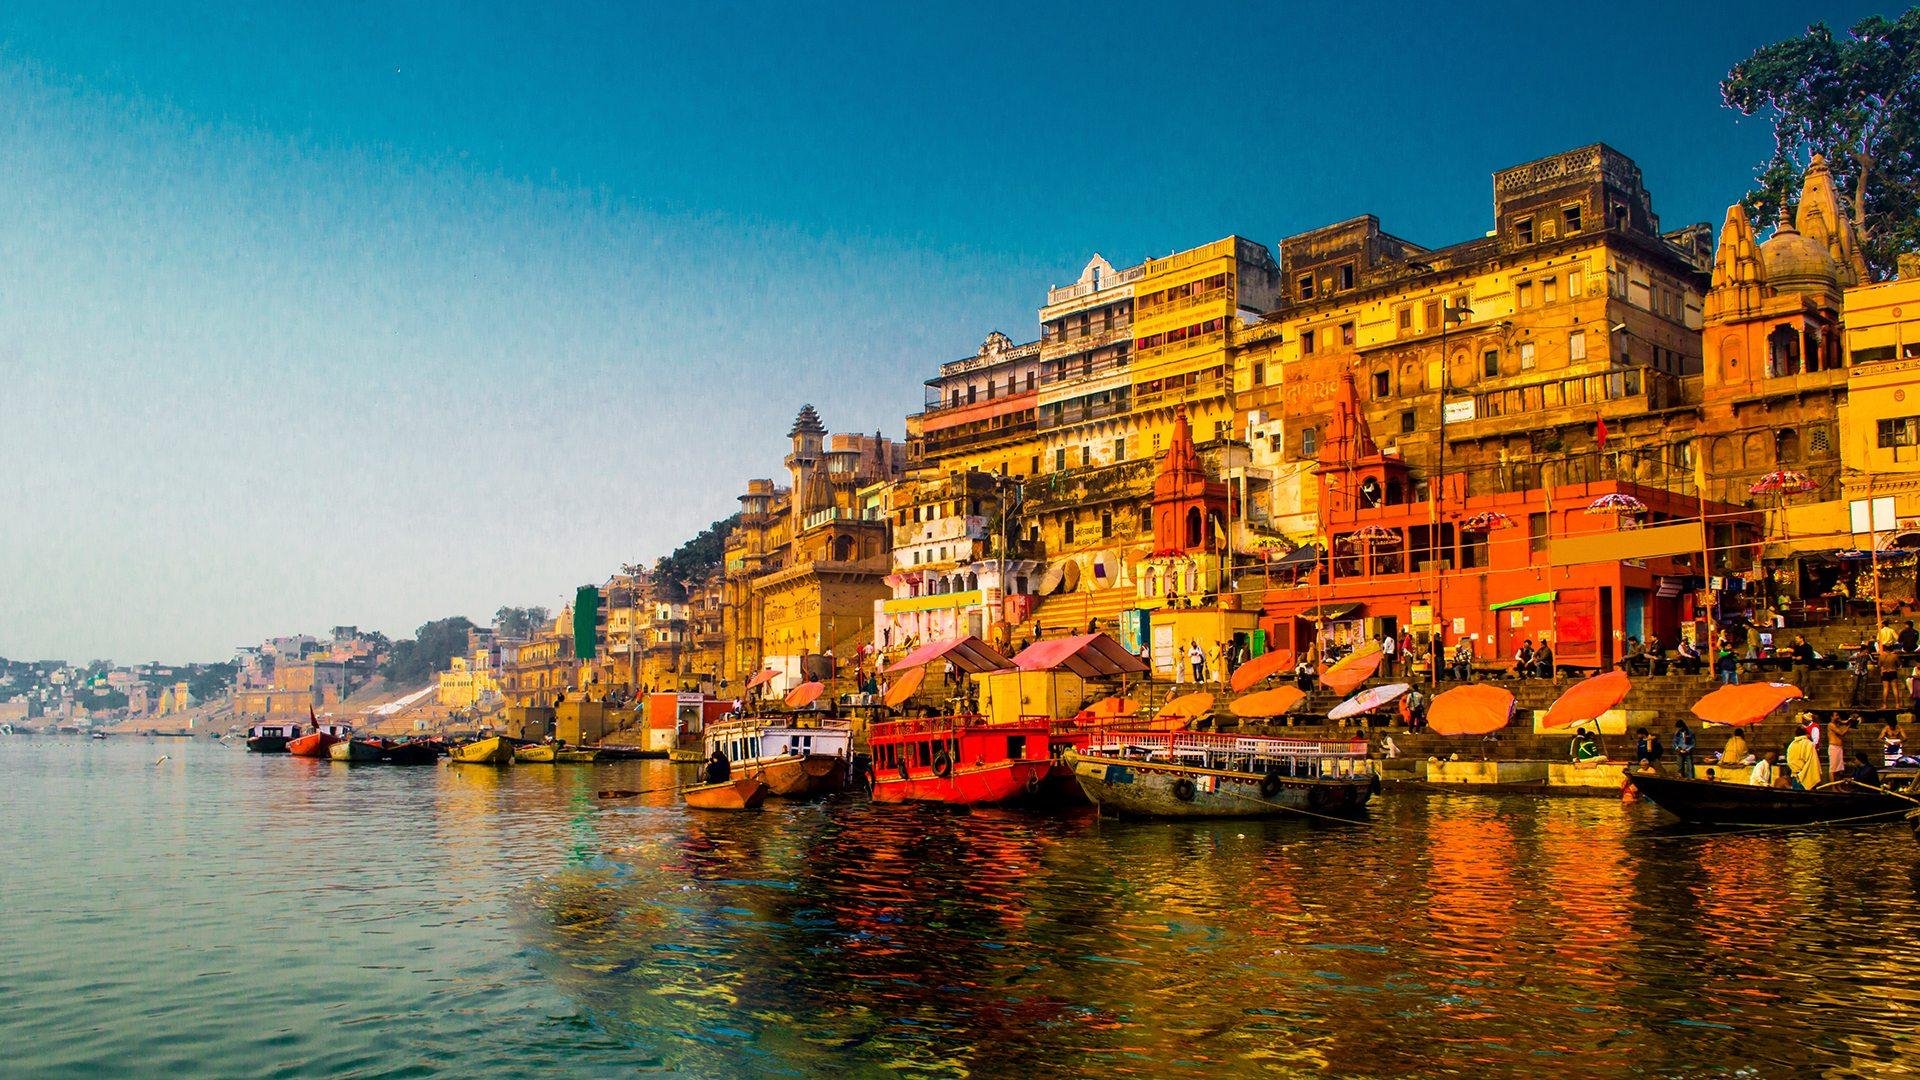 السياحة في الهند   الهند   أماكن سياحية   سياحة   وجهات   سفر   رحلات طيران